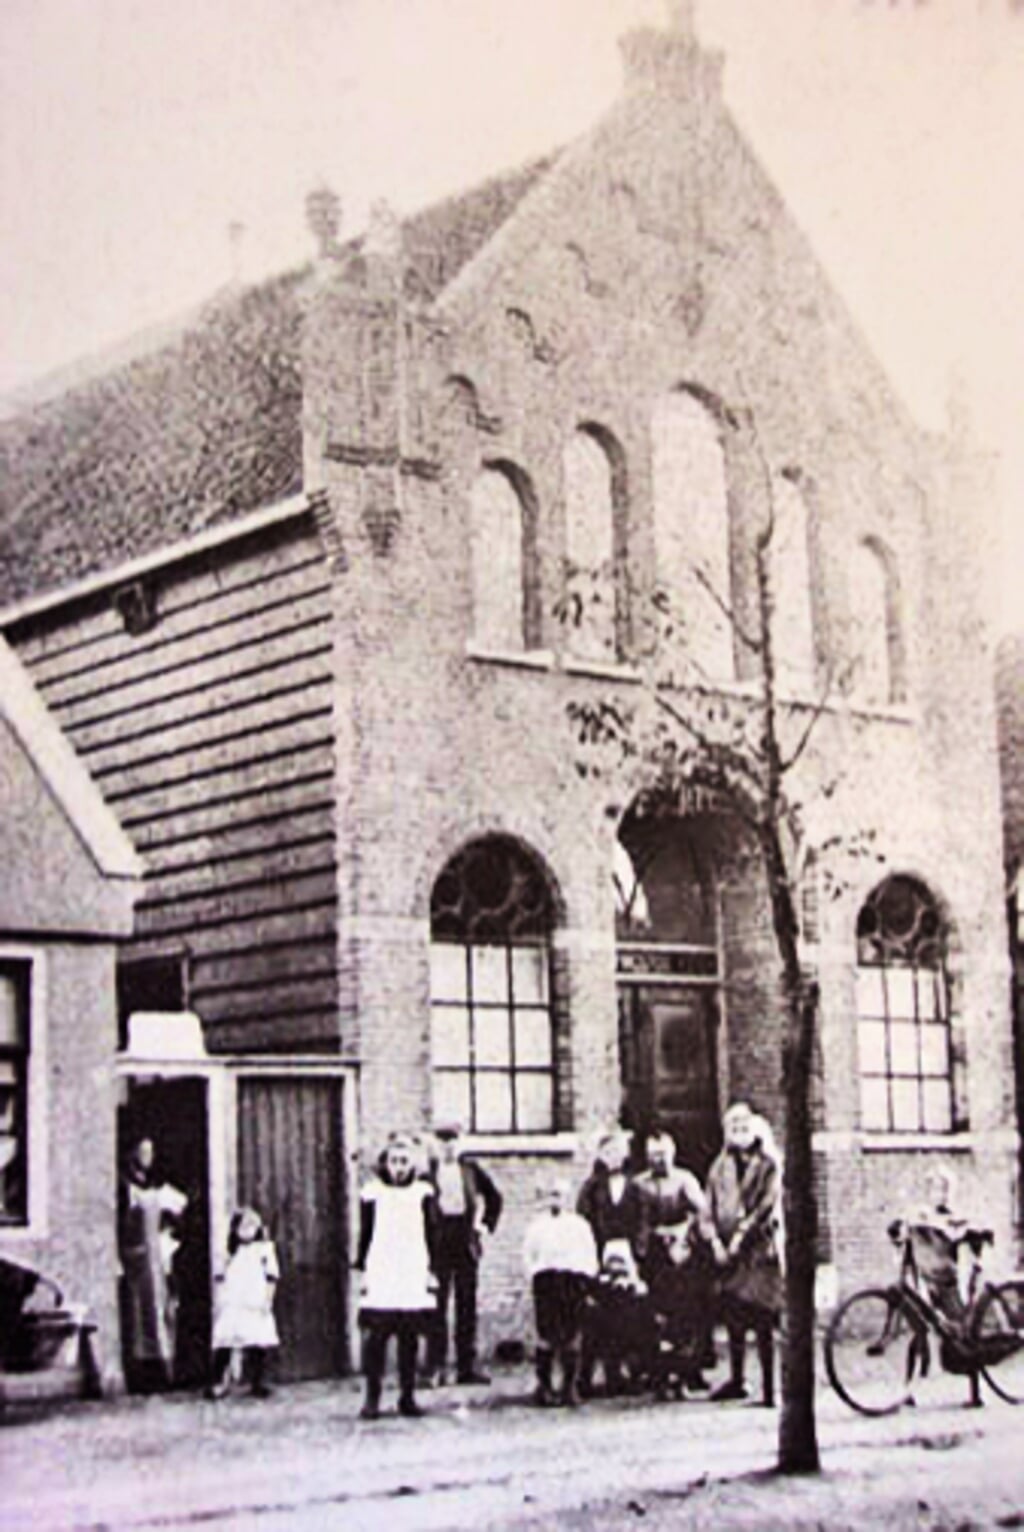 Er werd in 1912 al 'gekerkt' op het Guispad tot de Parklaankerk in 1923 werd geopend.